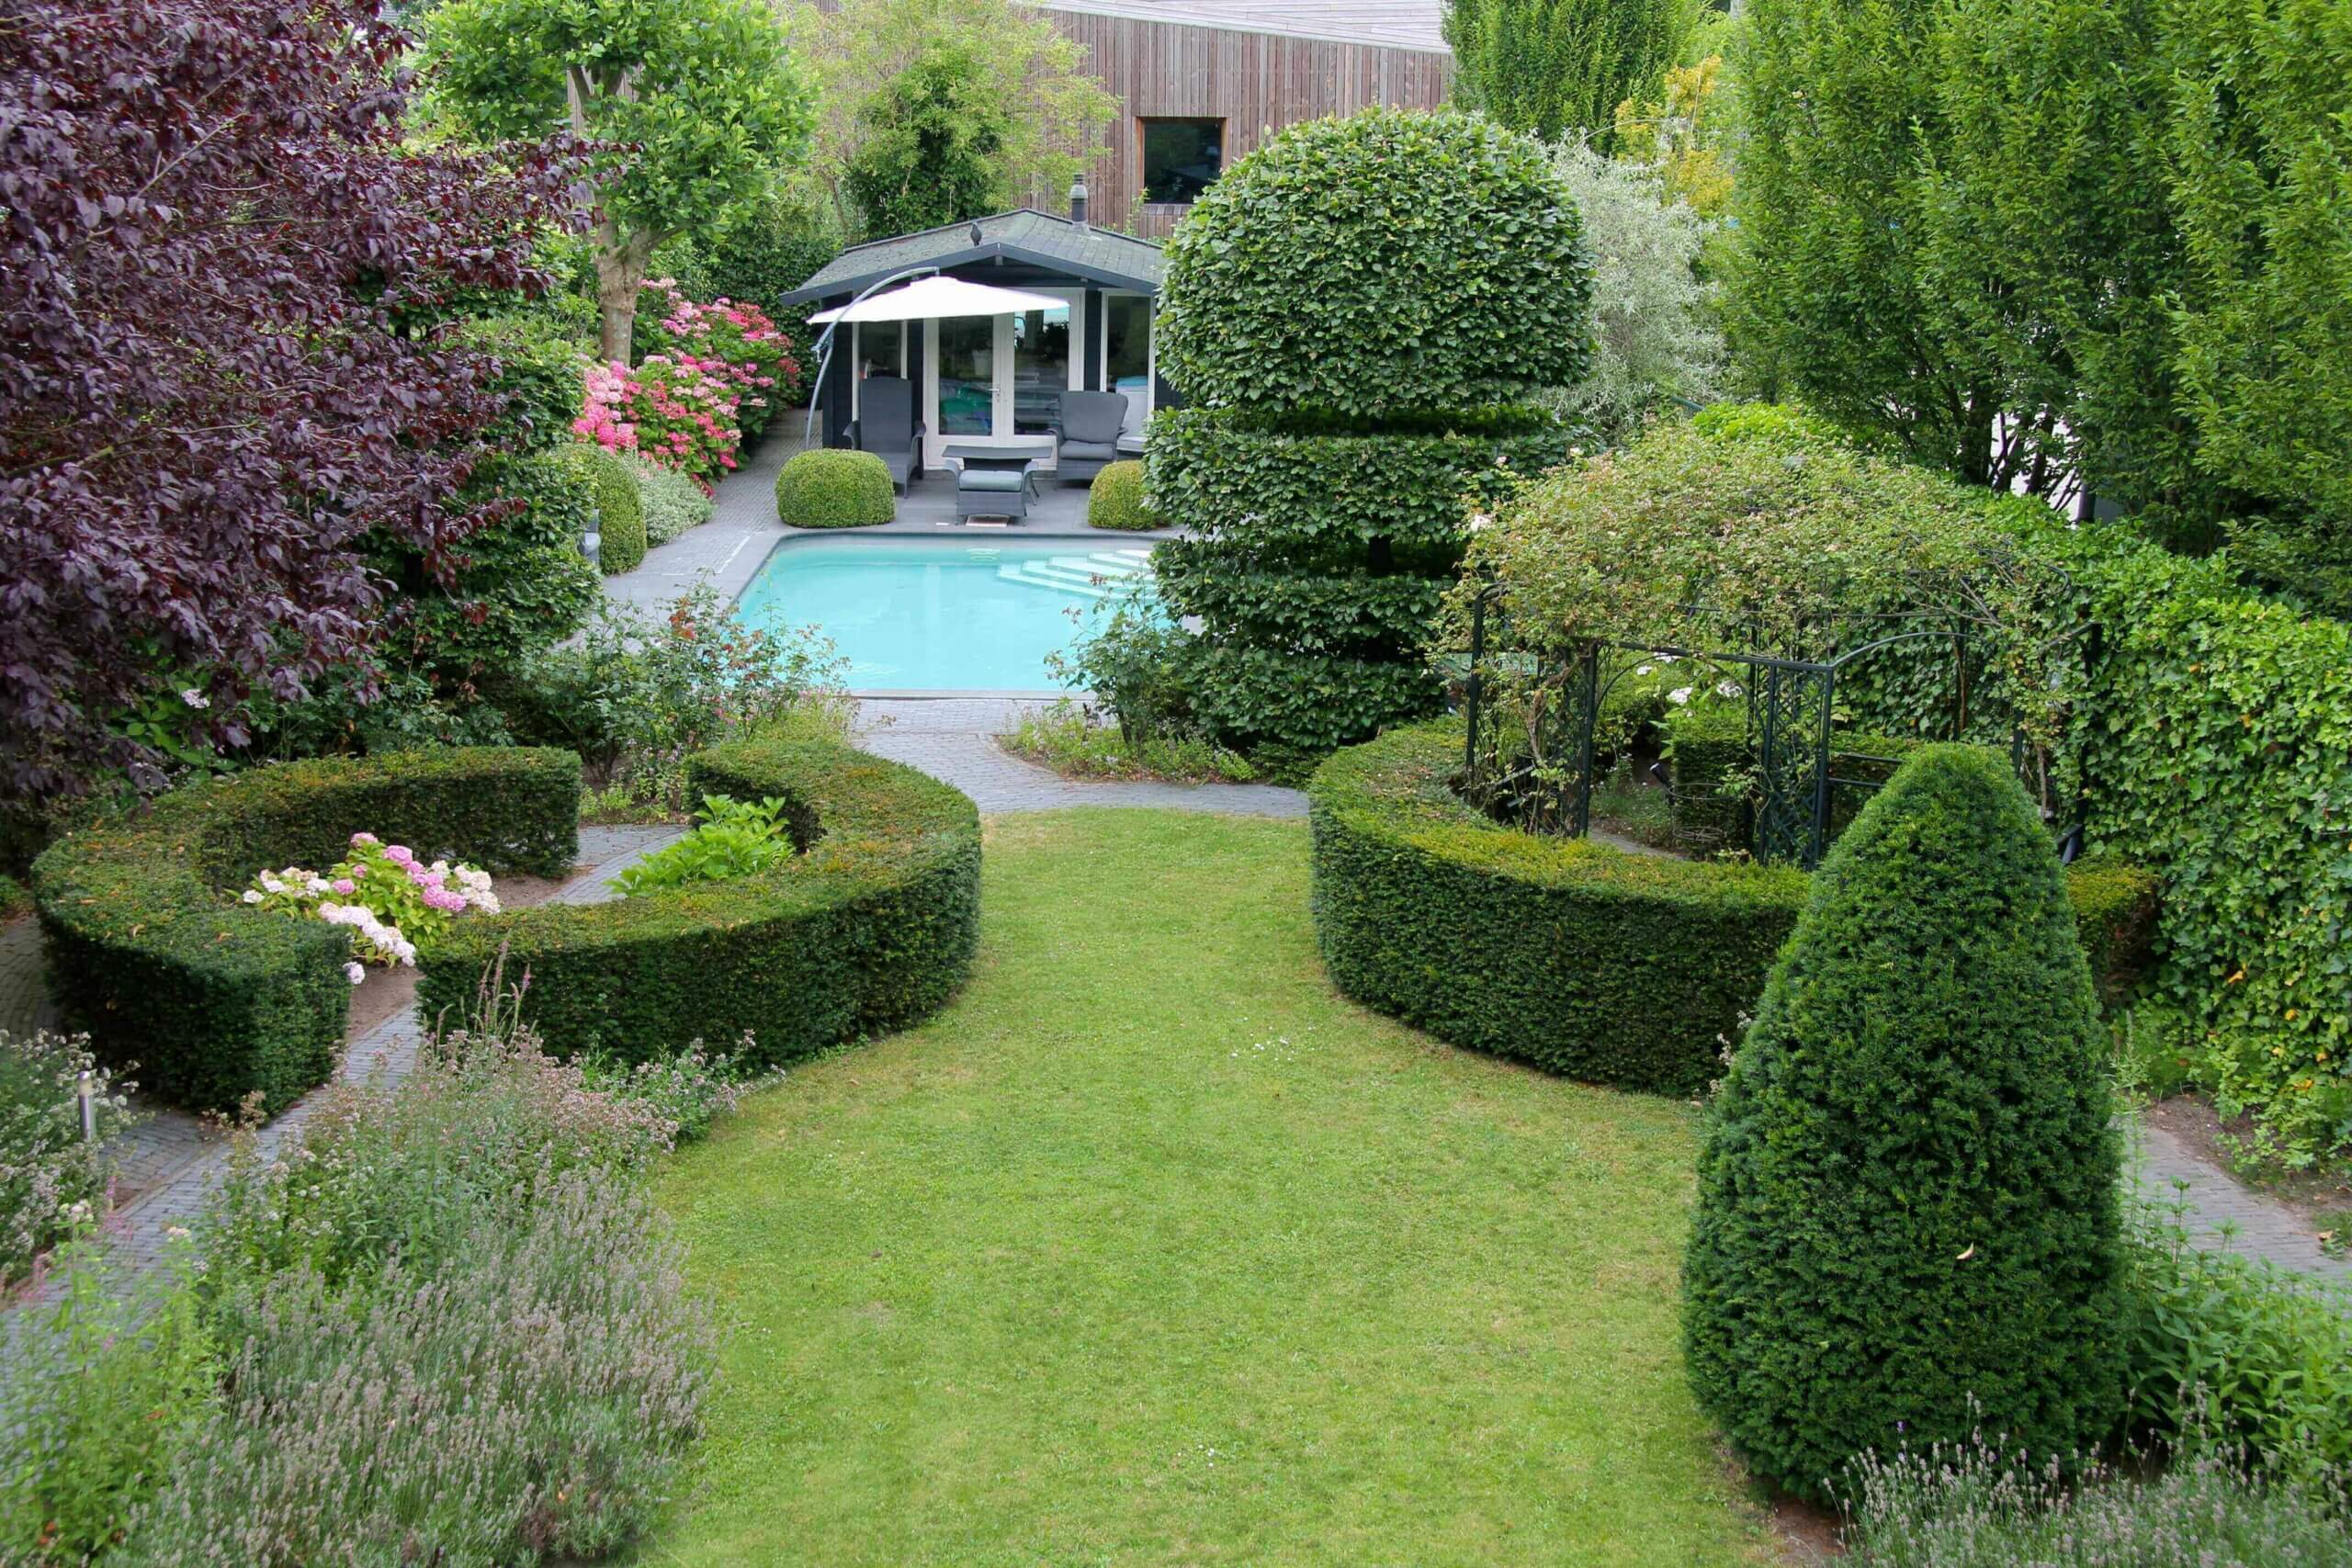 Groene tuin met zwembad